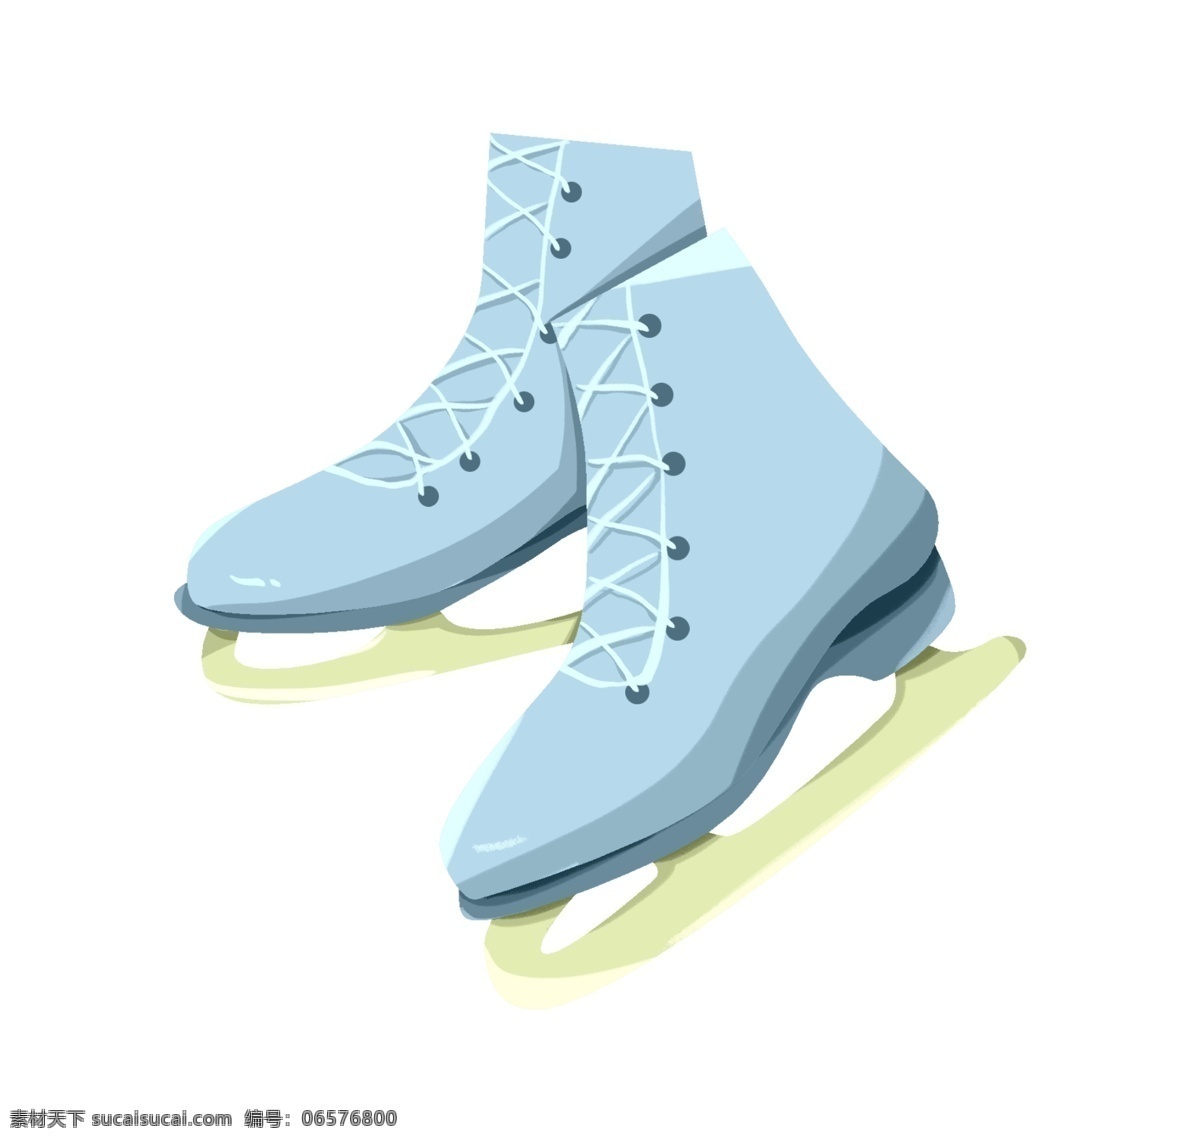 手绘 冬季 溜冰鞋 插画 蓝色 户外溜冰鞋 溜冰鞋插画 鞋子 卡通溜冰鞋